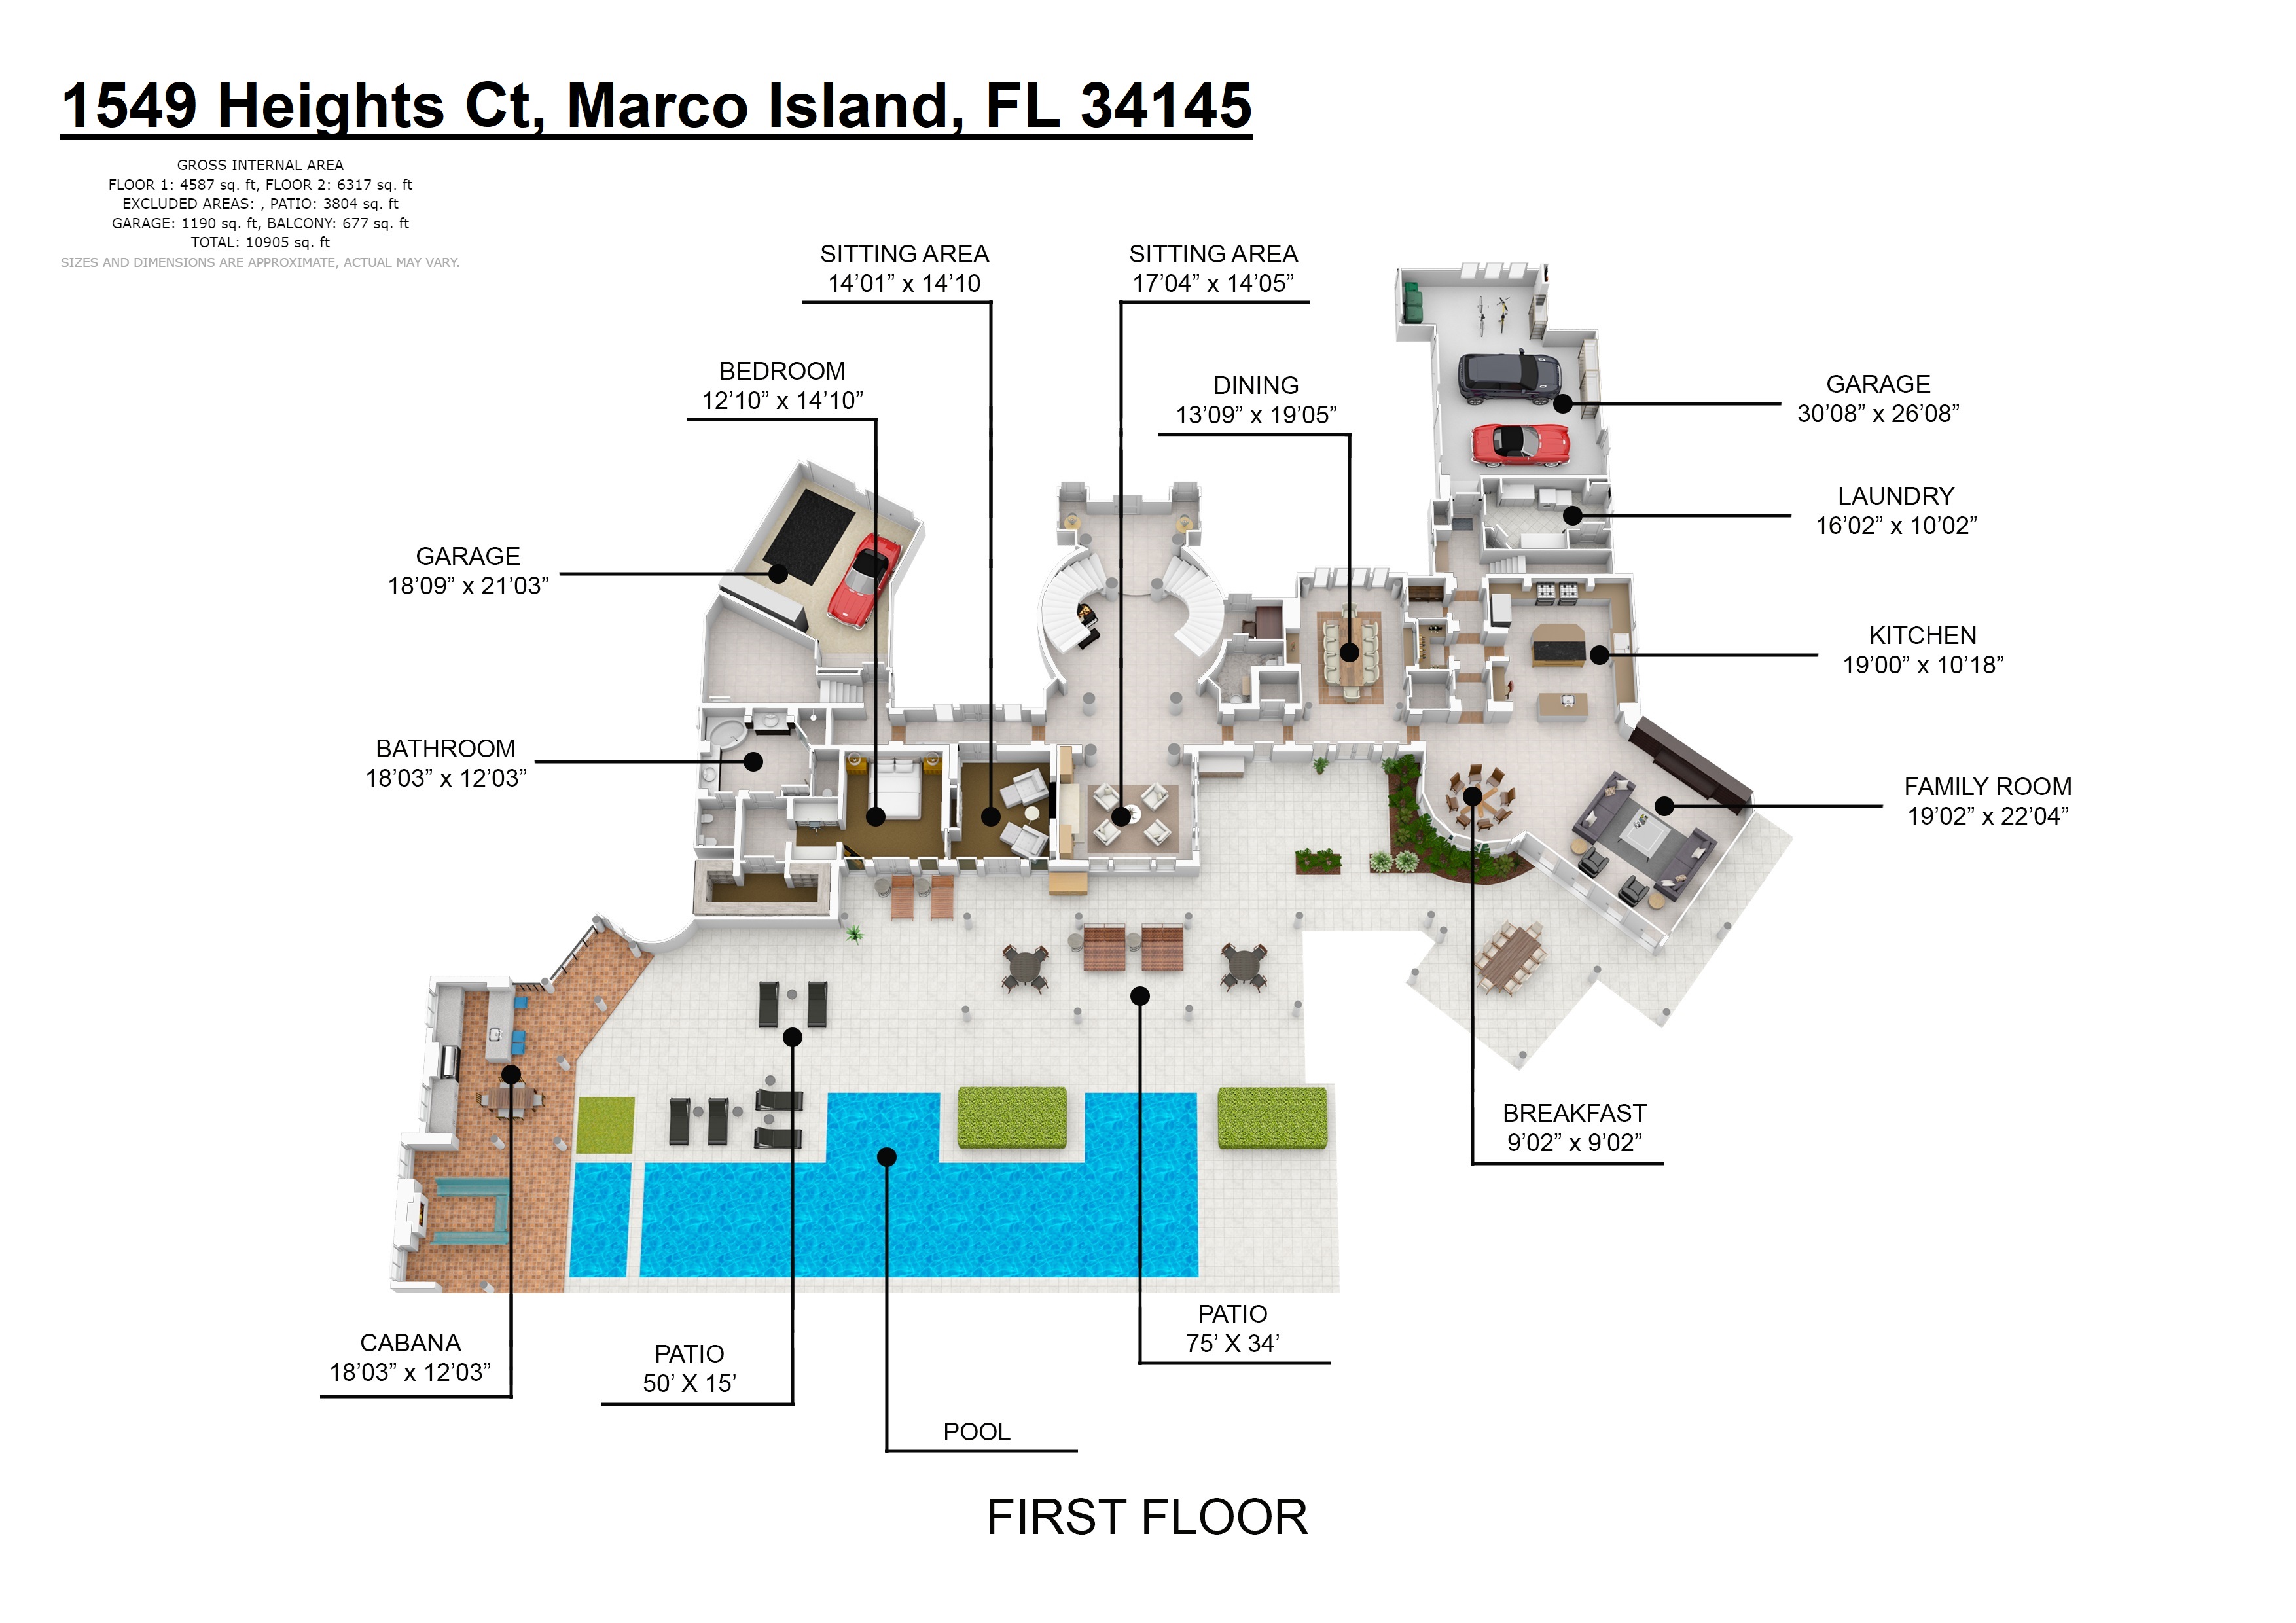 1549 Heights Ct, Marco Island, FL 34145 floor plan